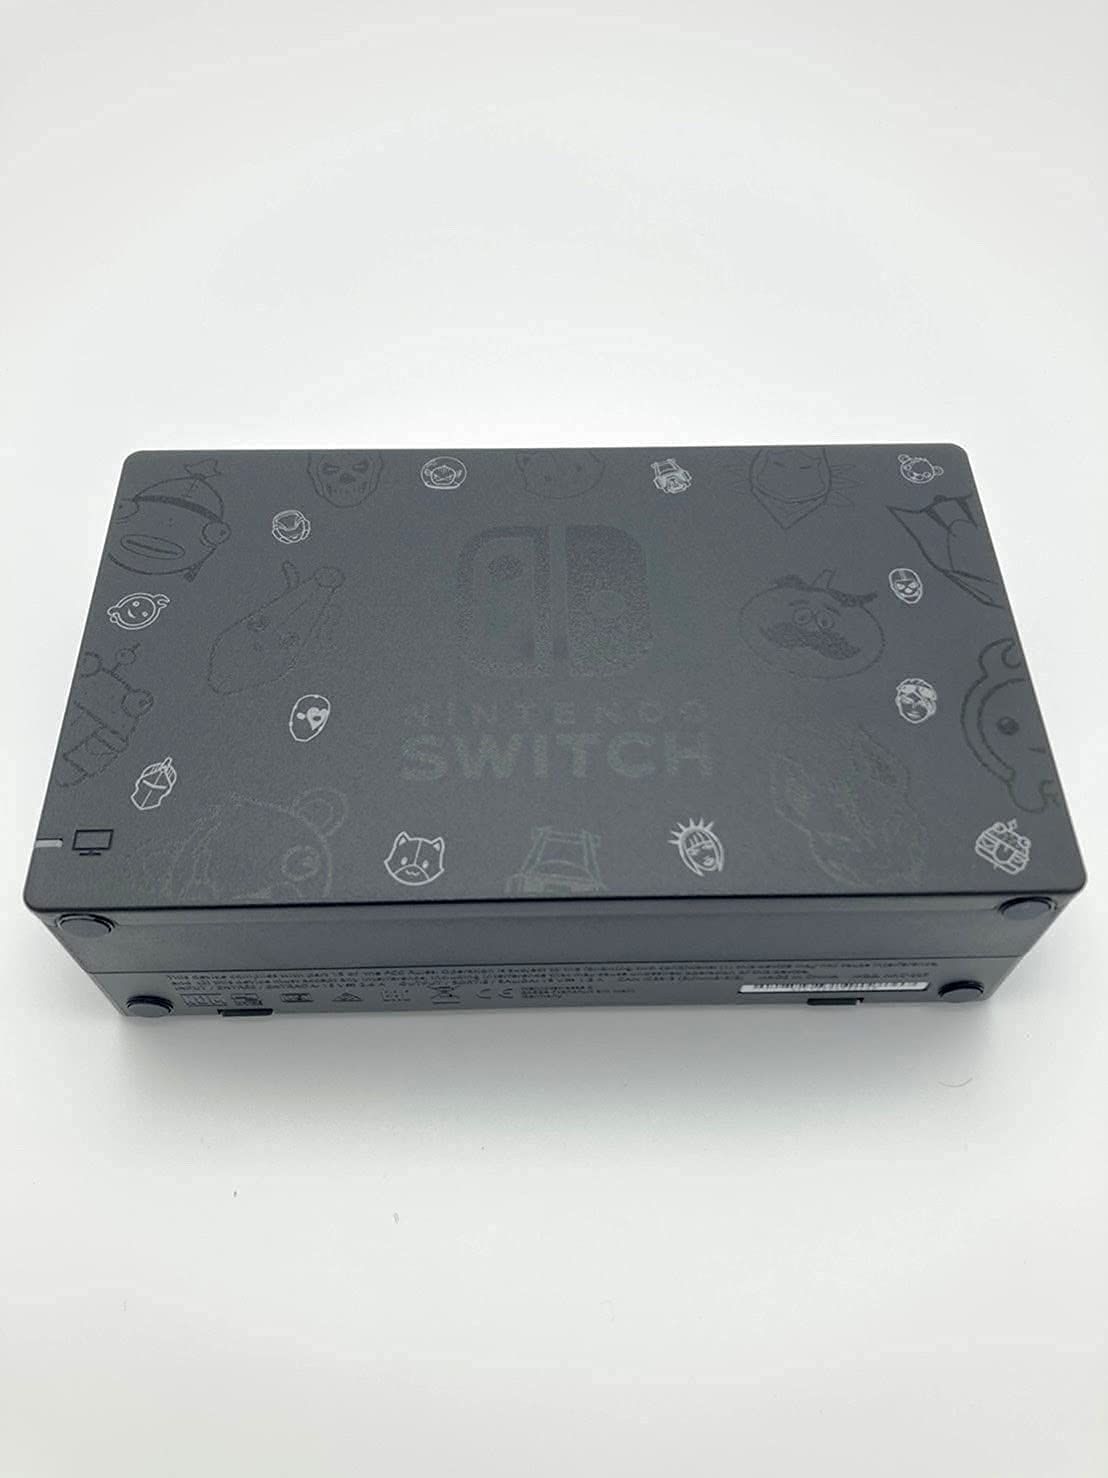 生産終了】Nintendo Switch フォートナイトSpecialセット - ゲーム 